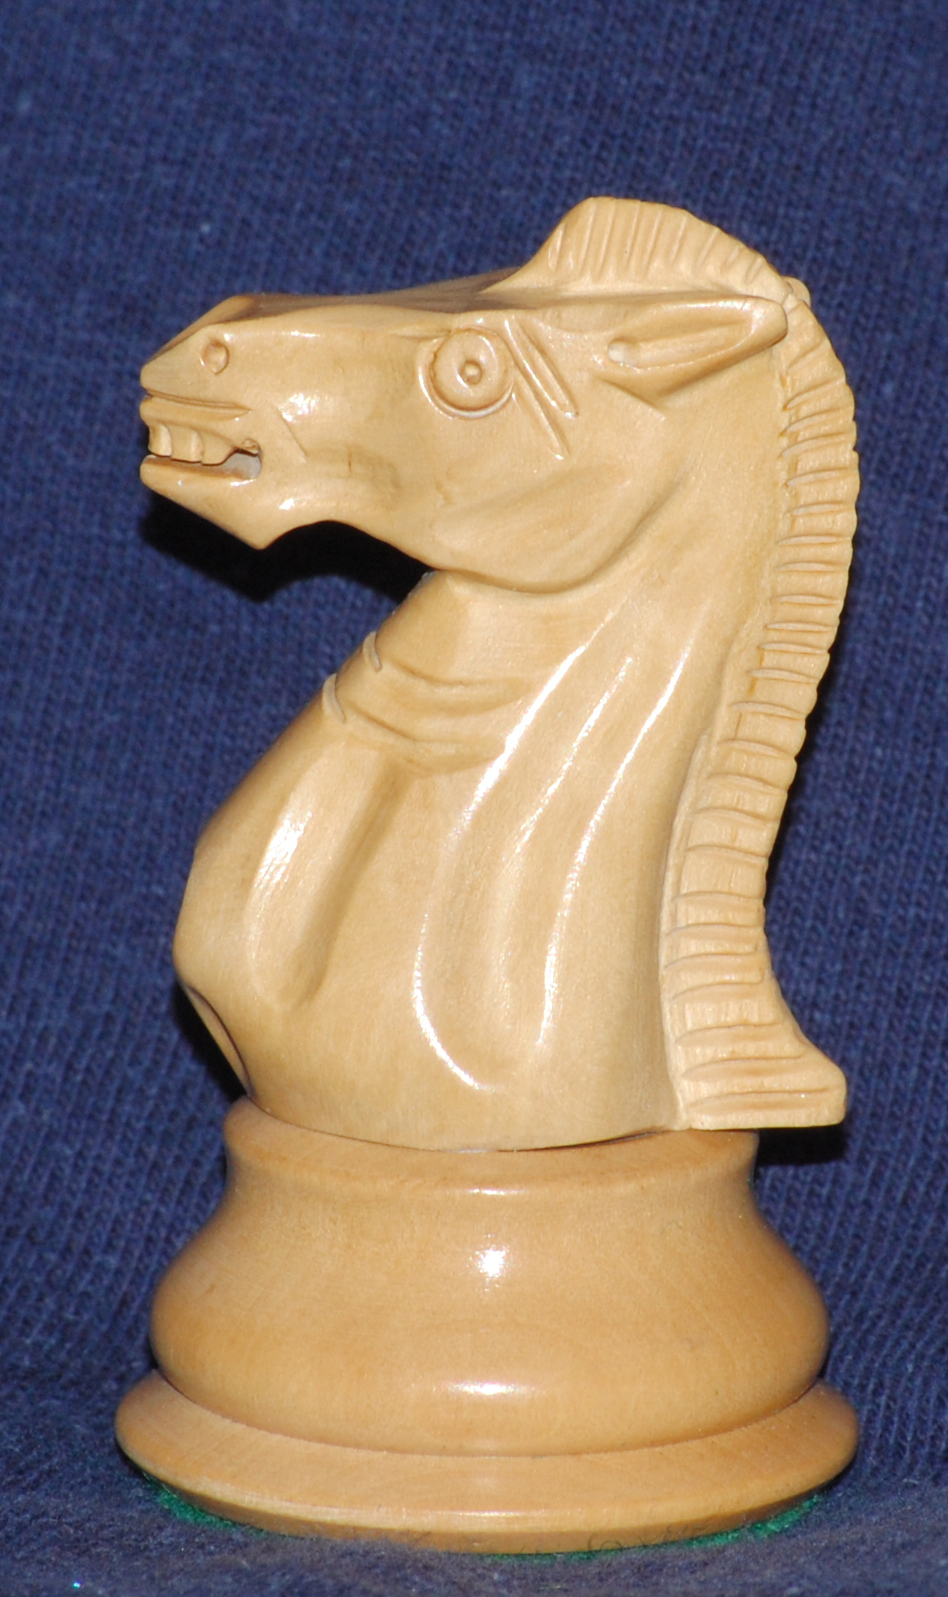 File:Knight-chess.jpg - Wikipedia